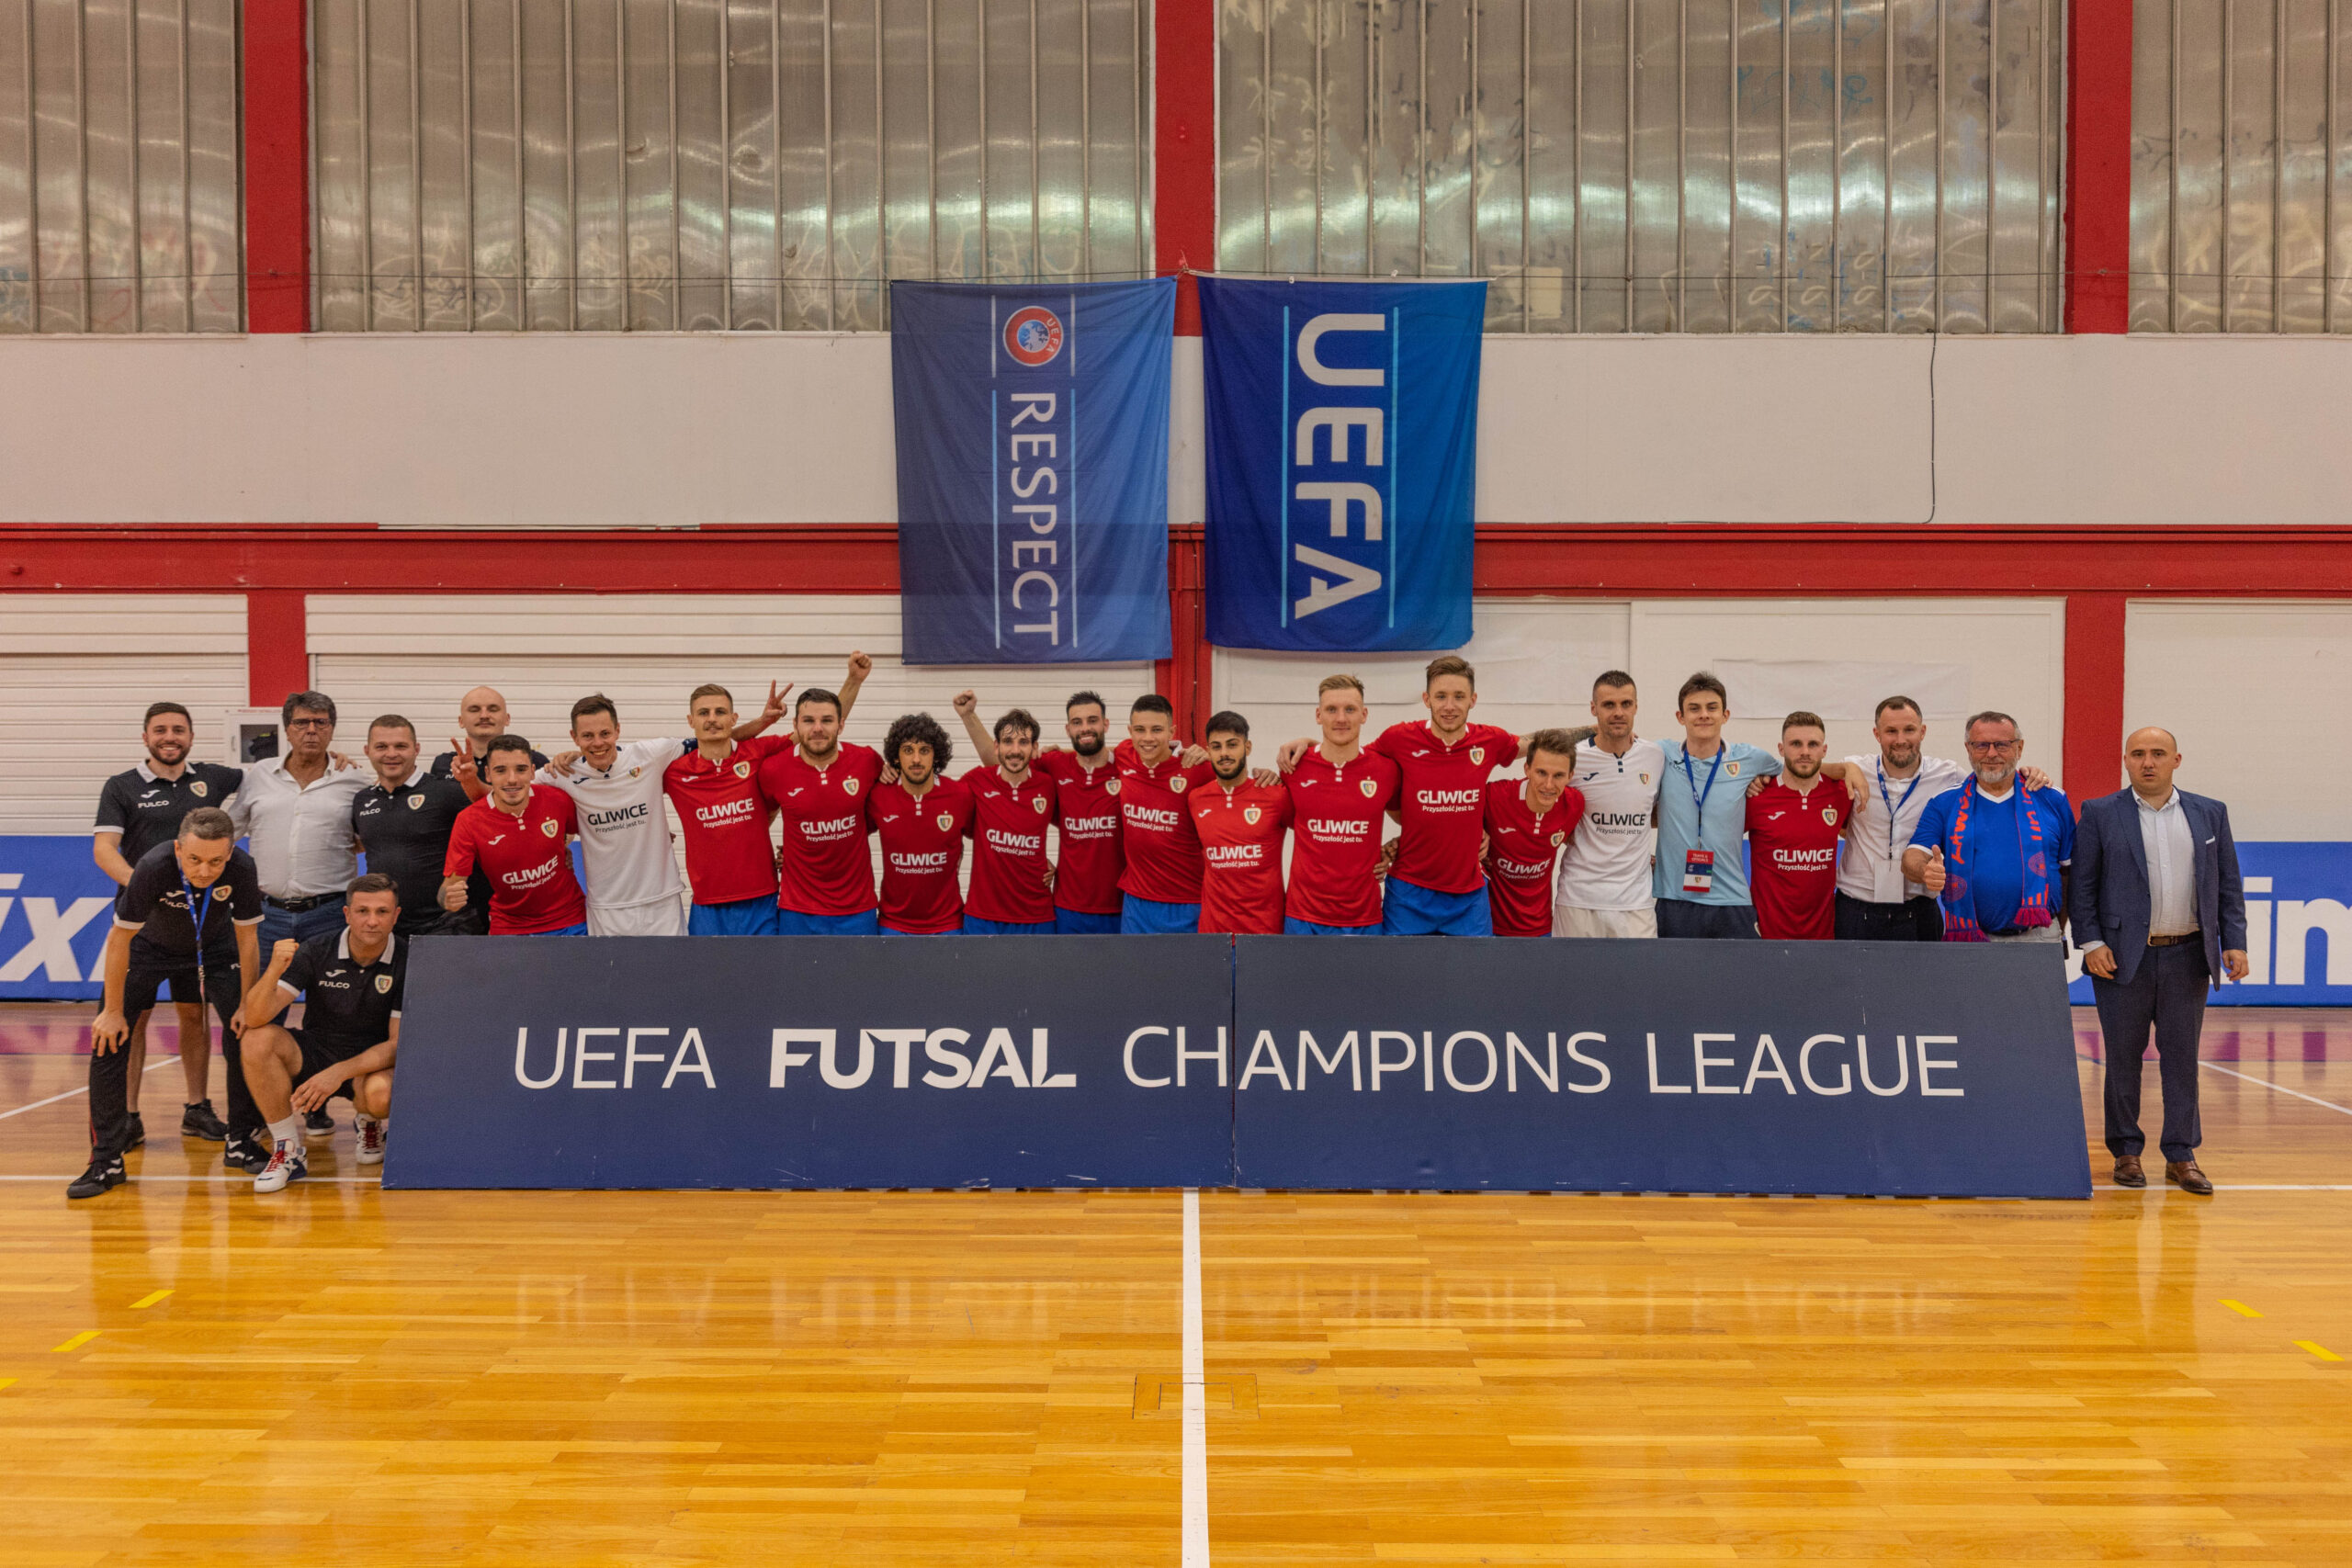 Futsalowy Piast w kolejnej rundzie eliminacji Ligi Mistrzów!